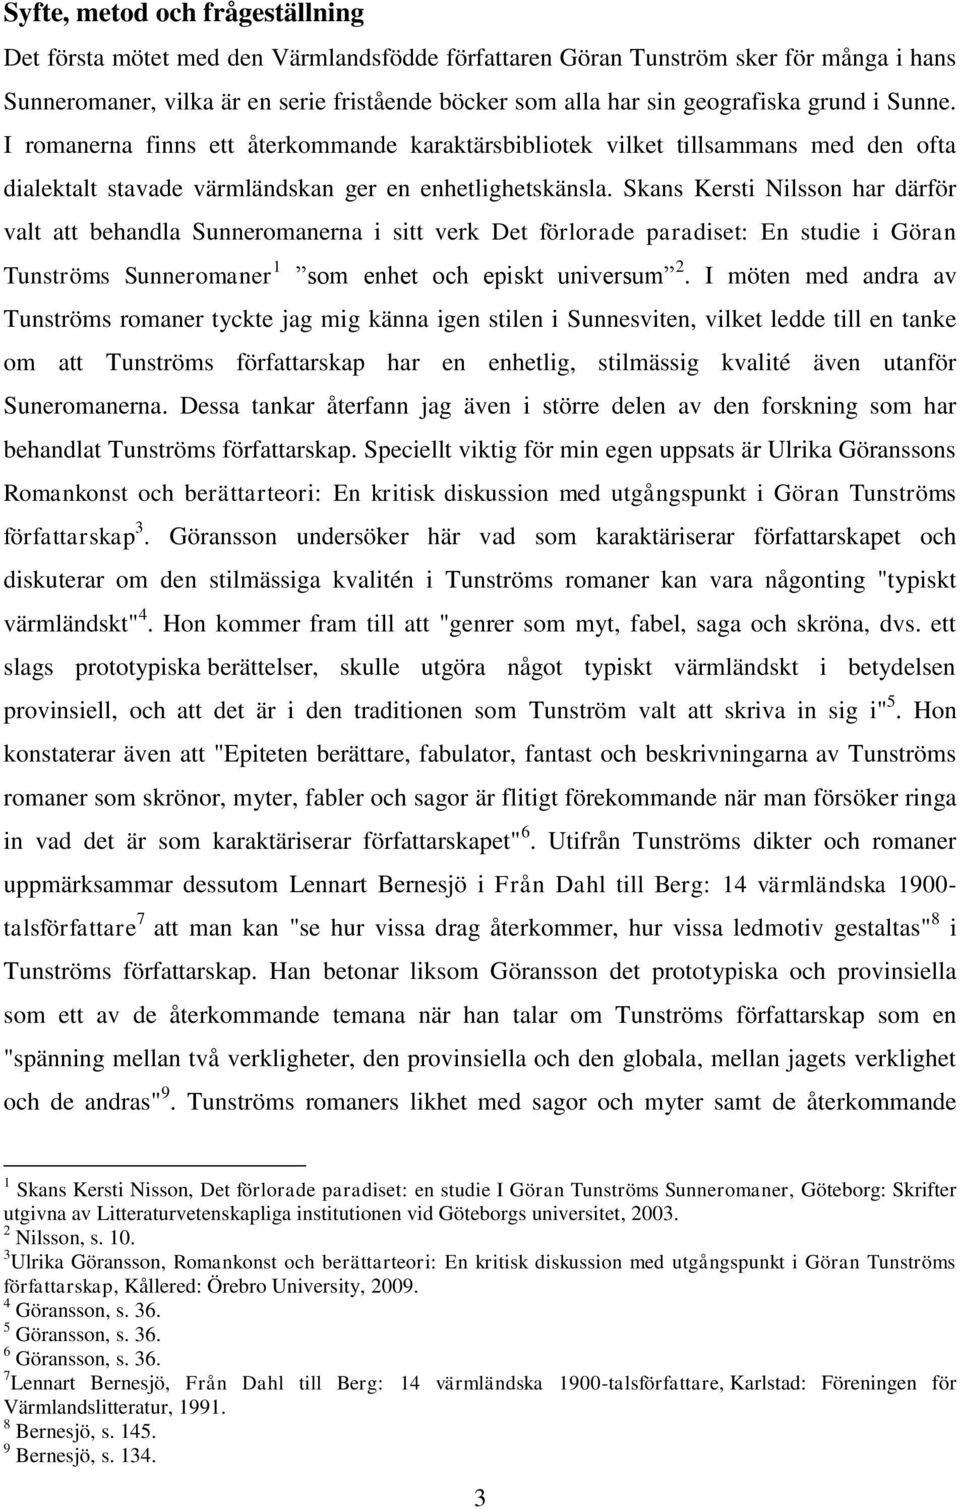 Skans Kersti Nilsson har därför valt att behandla Sunneromanerna i sitt verk Det förlorade paradiset: En studie i Göran Tunströms Sunneromaner 1 som enhet och episkt universum 2.